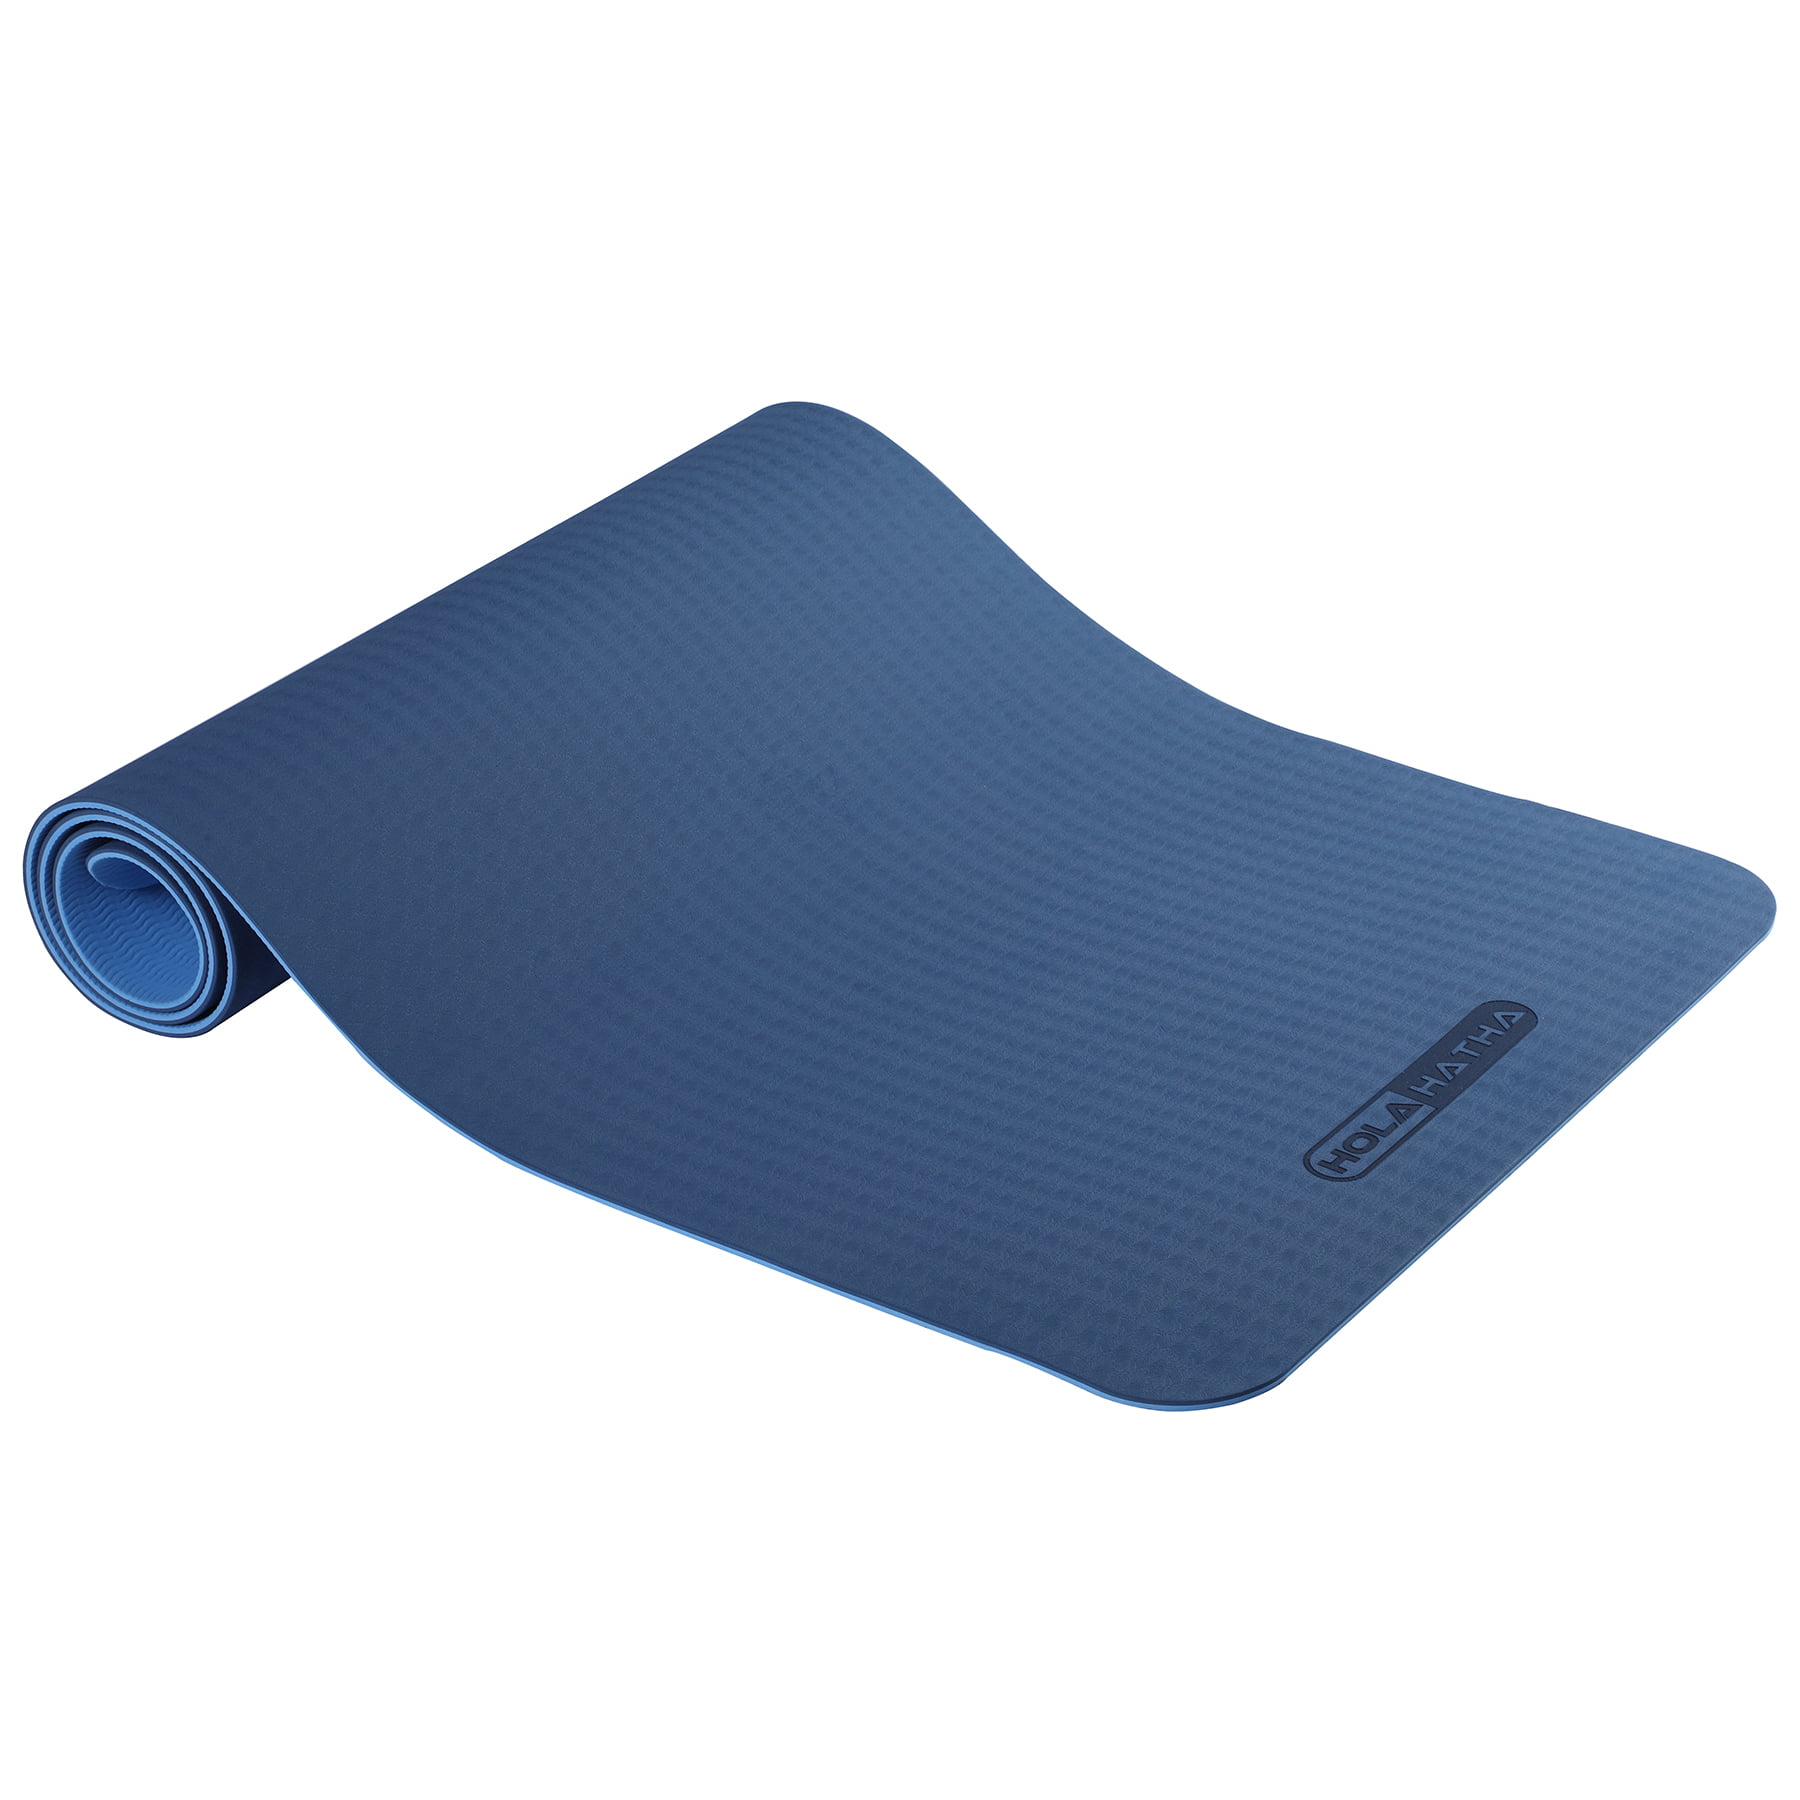 hefeilzmy Thick Yoga Mat for Women Anti-Slip Waterproof